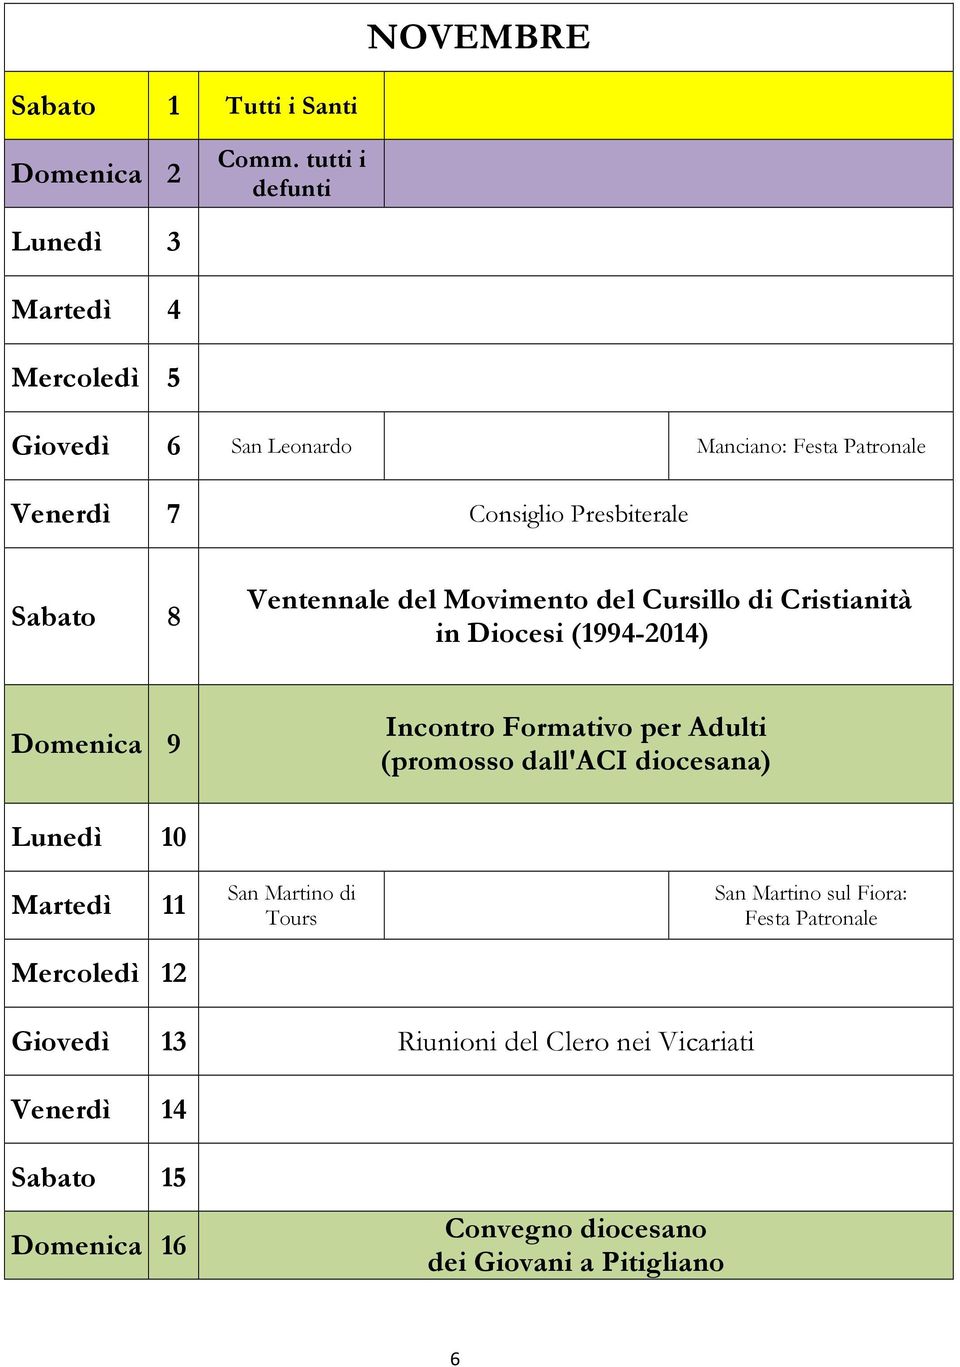 Ventennale del Movimento del Cursillo di Cristianità in Diocesi (1994-2014) Domenica 9 Incontro Formativo per Adulti (promosso